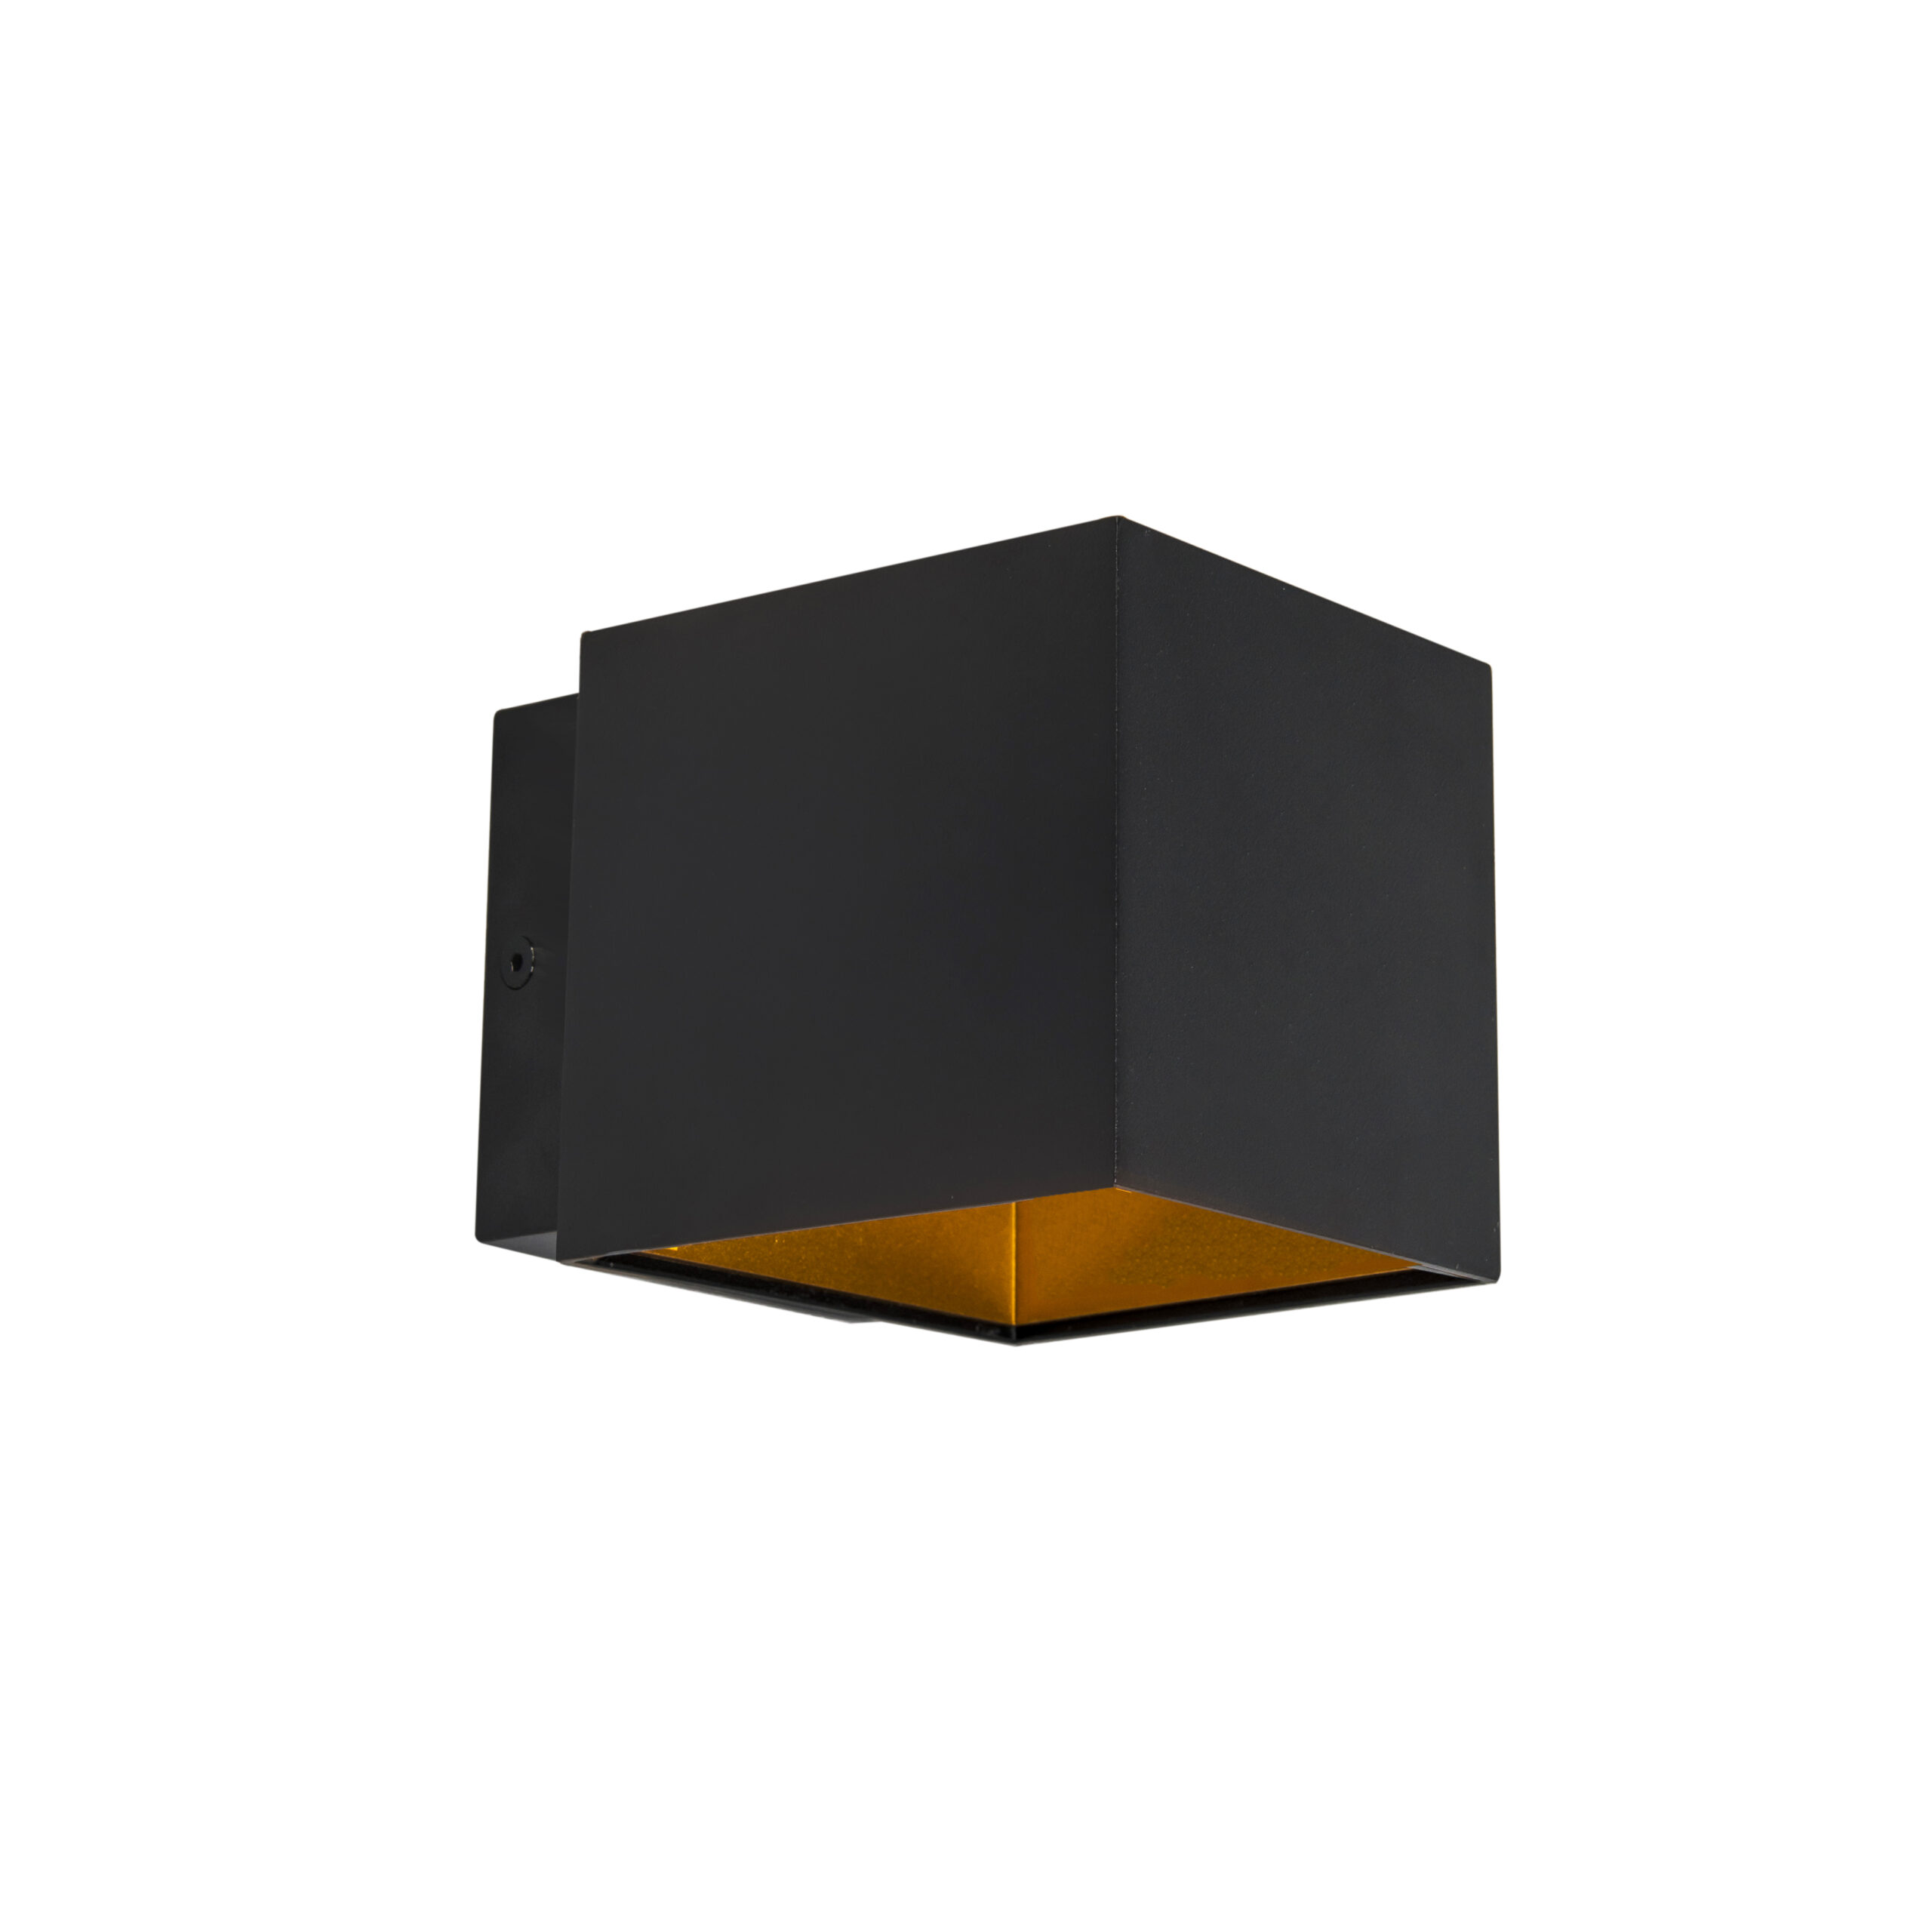 wandlampen Design wandlamp incl. LED Caja Aluminium Zwart Compact en overal toepasbaar de zorgt voor een sfeervol beeld in je woning of kantoor. Dankzij